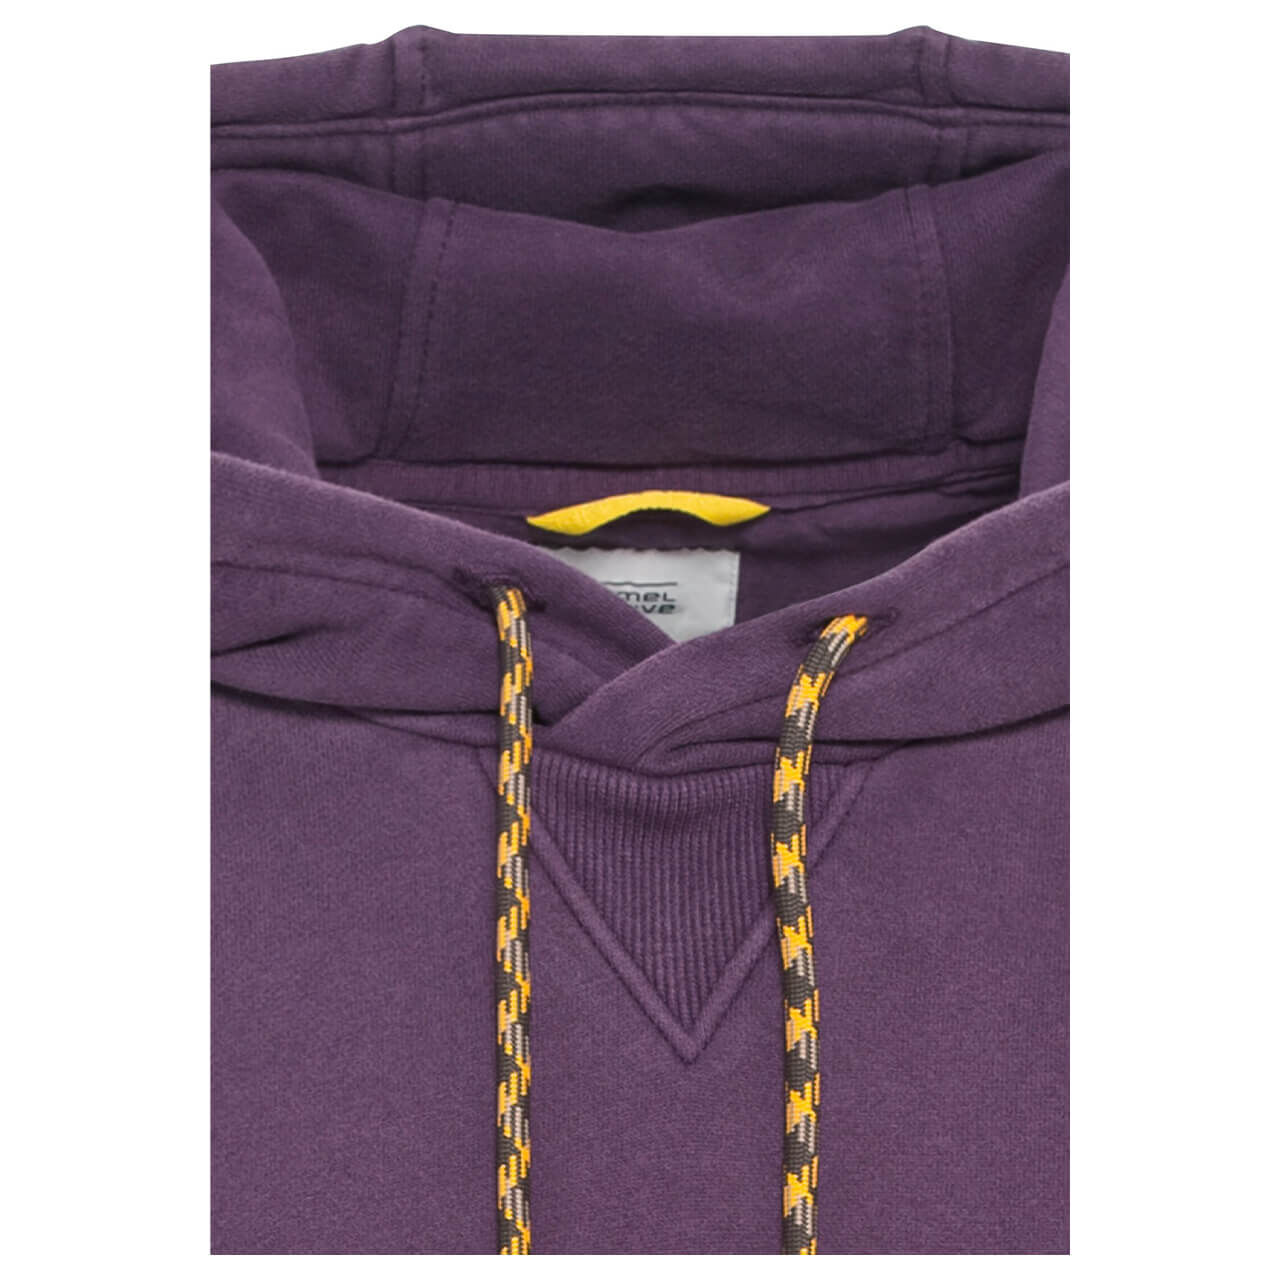 Camel active Herren Hoodie Sweatshirt purple